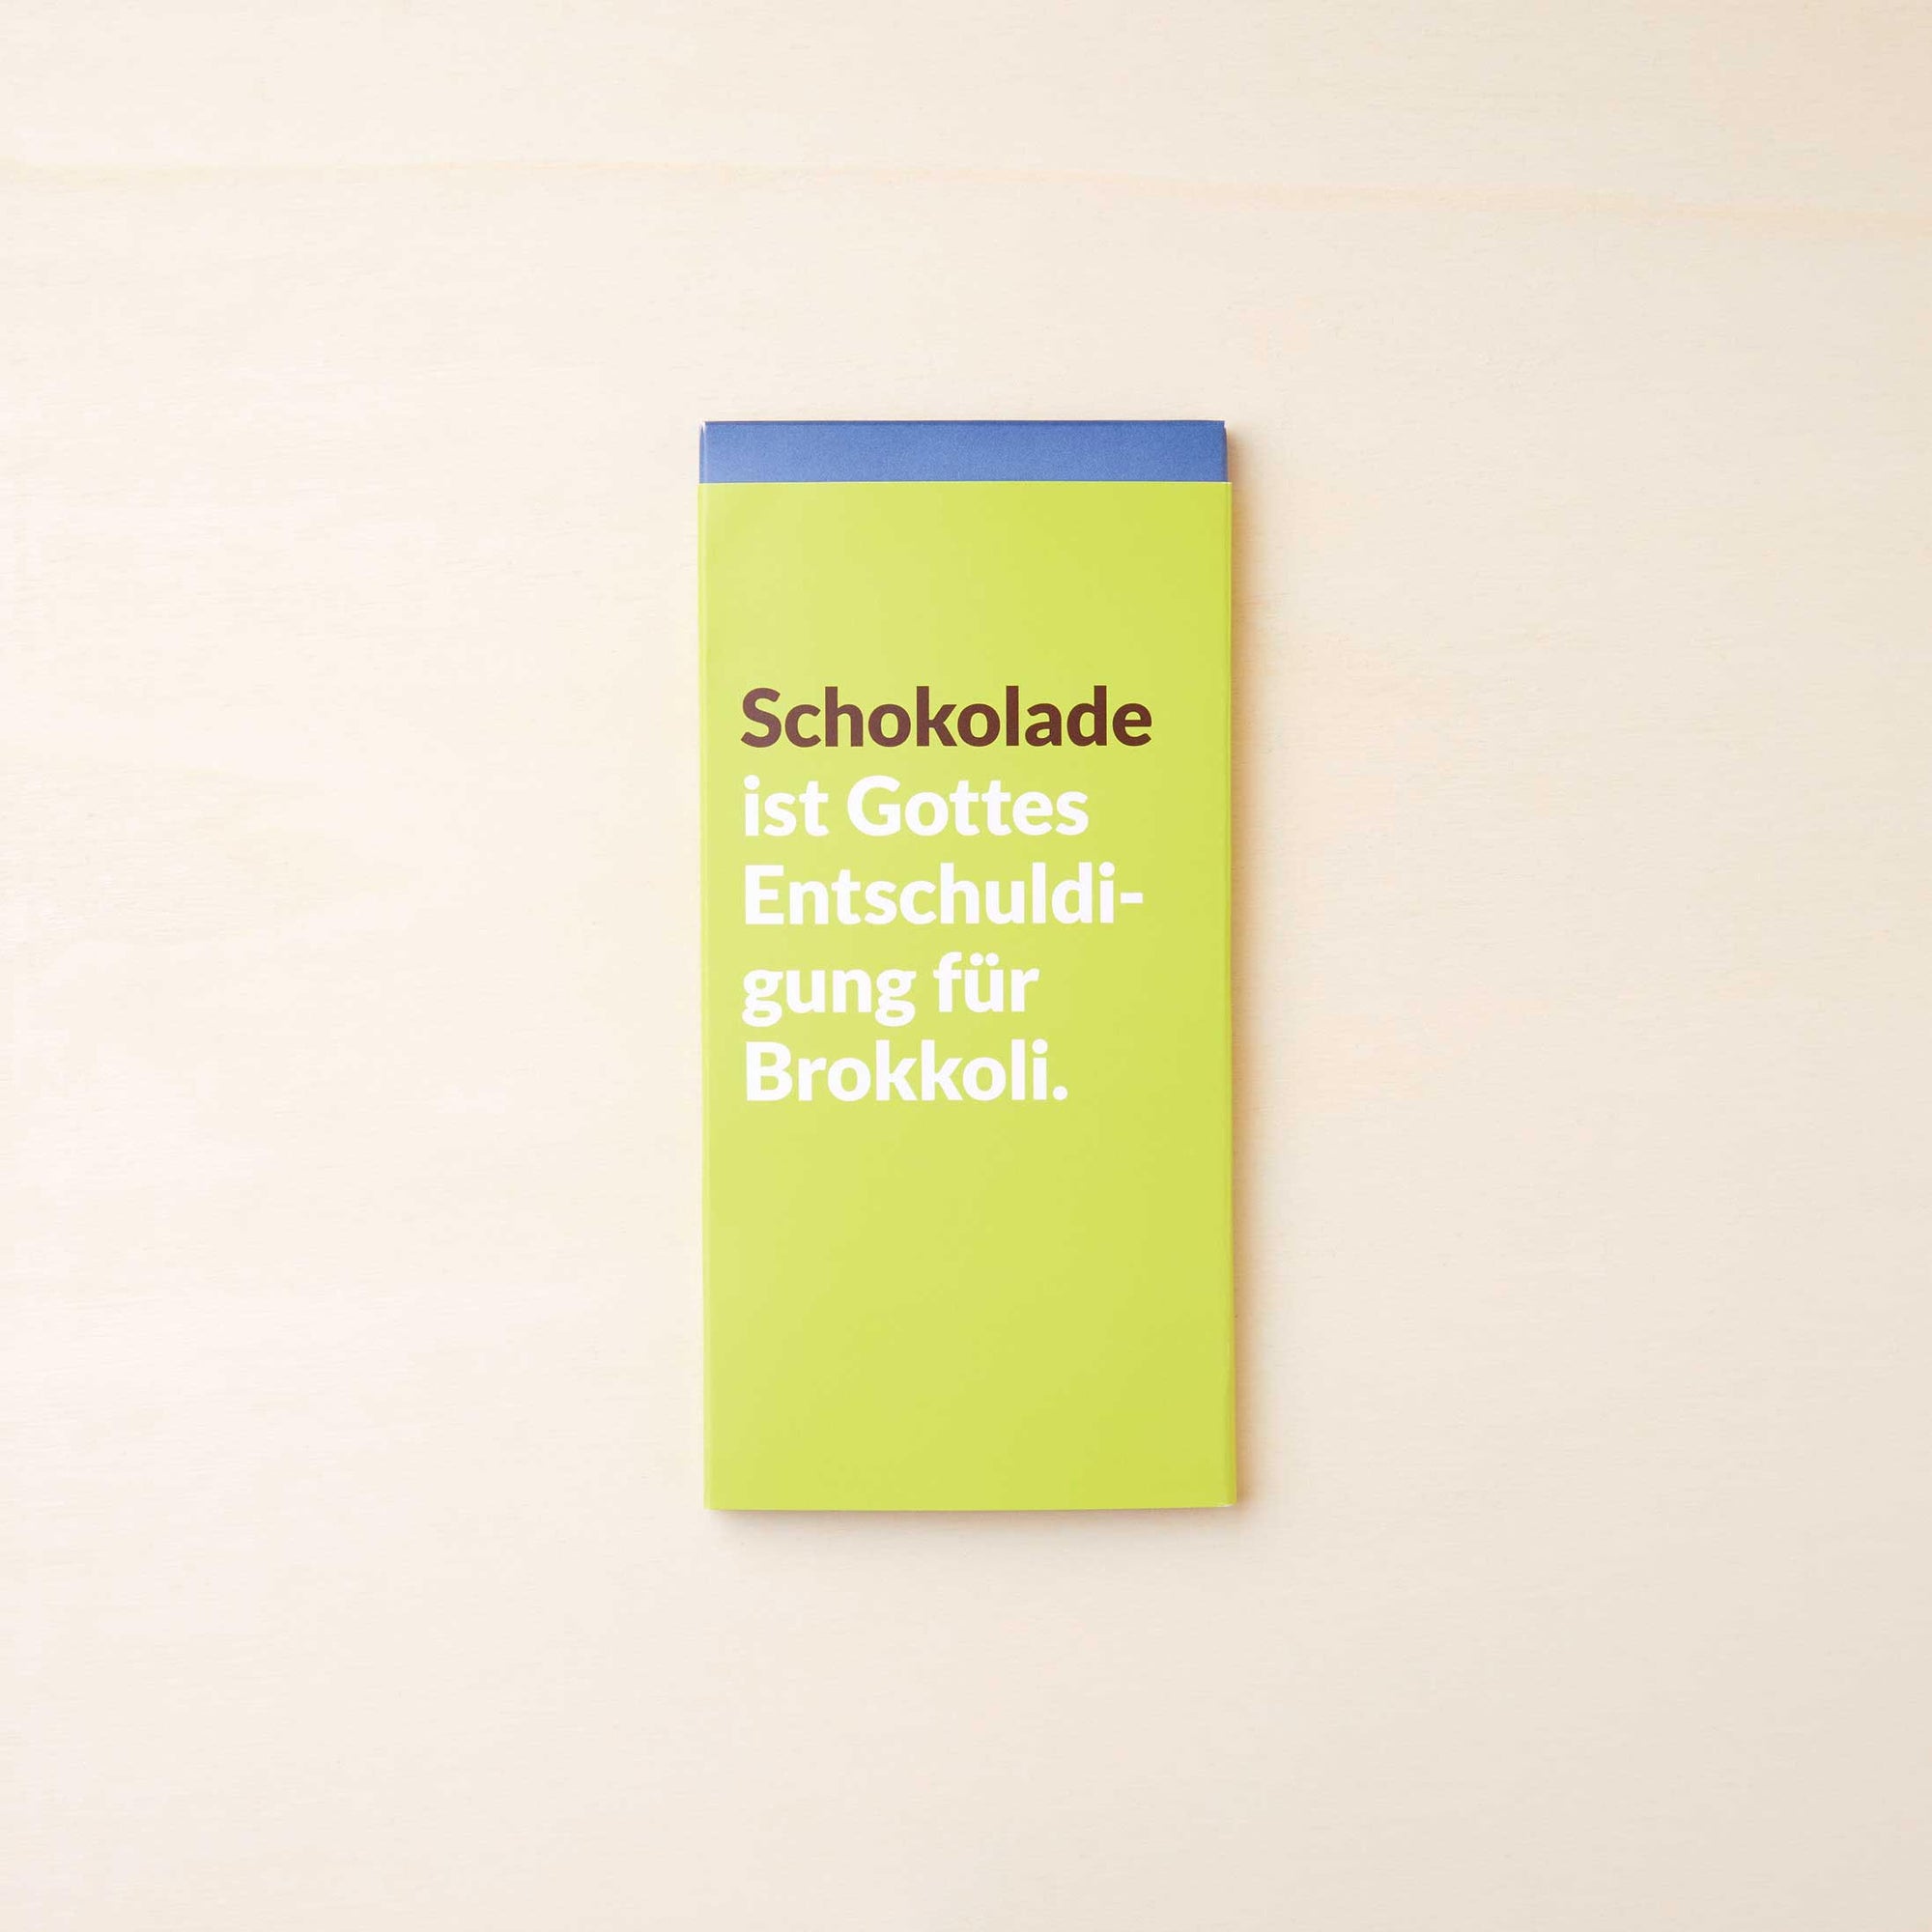 Extra cremige Vollmilchschokolade von Lindt in einer grünen Verpackung mit dem Spruch: "Schokolade ist Gottes Entschuldigung für Brokkoli".